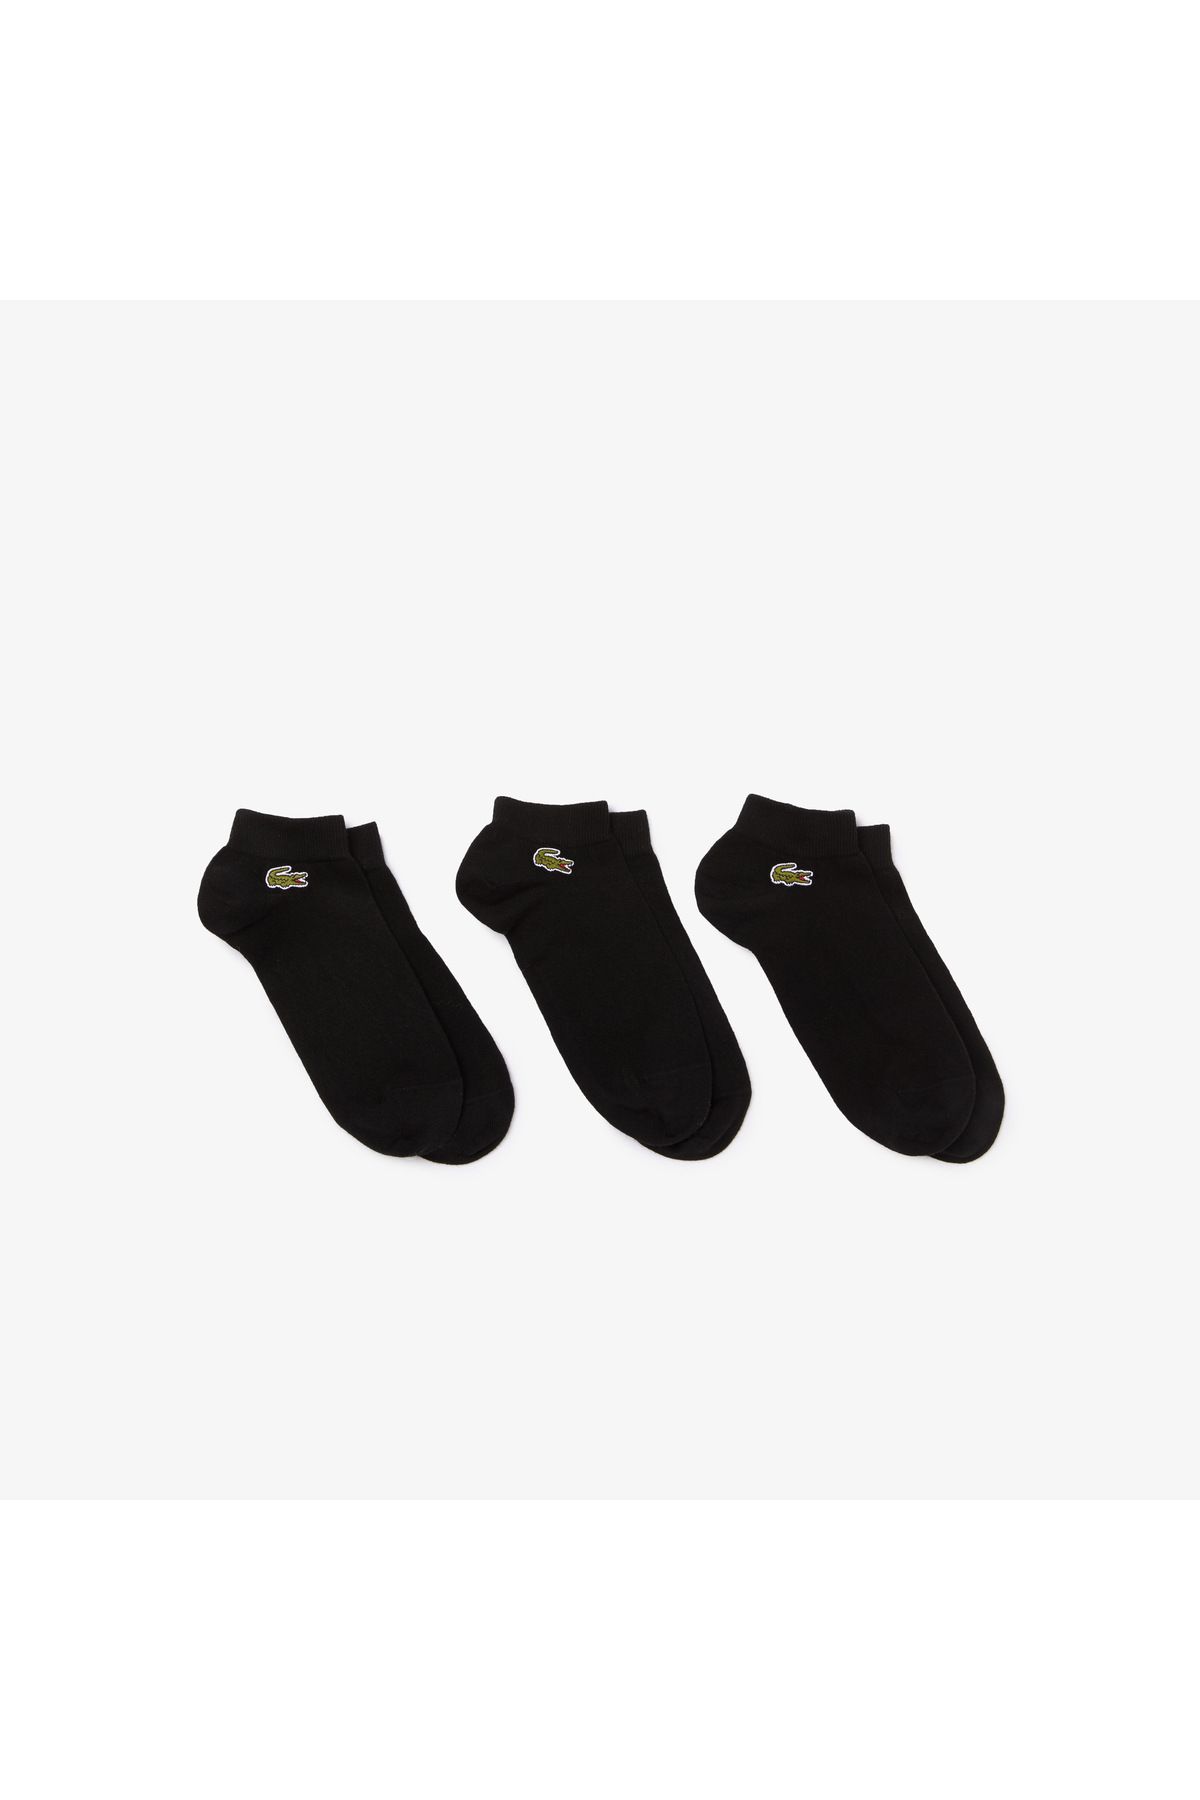 Lacoste Erkek 3'lü Siyah Çorap